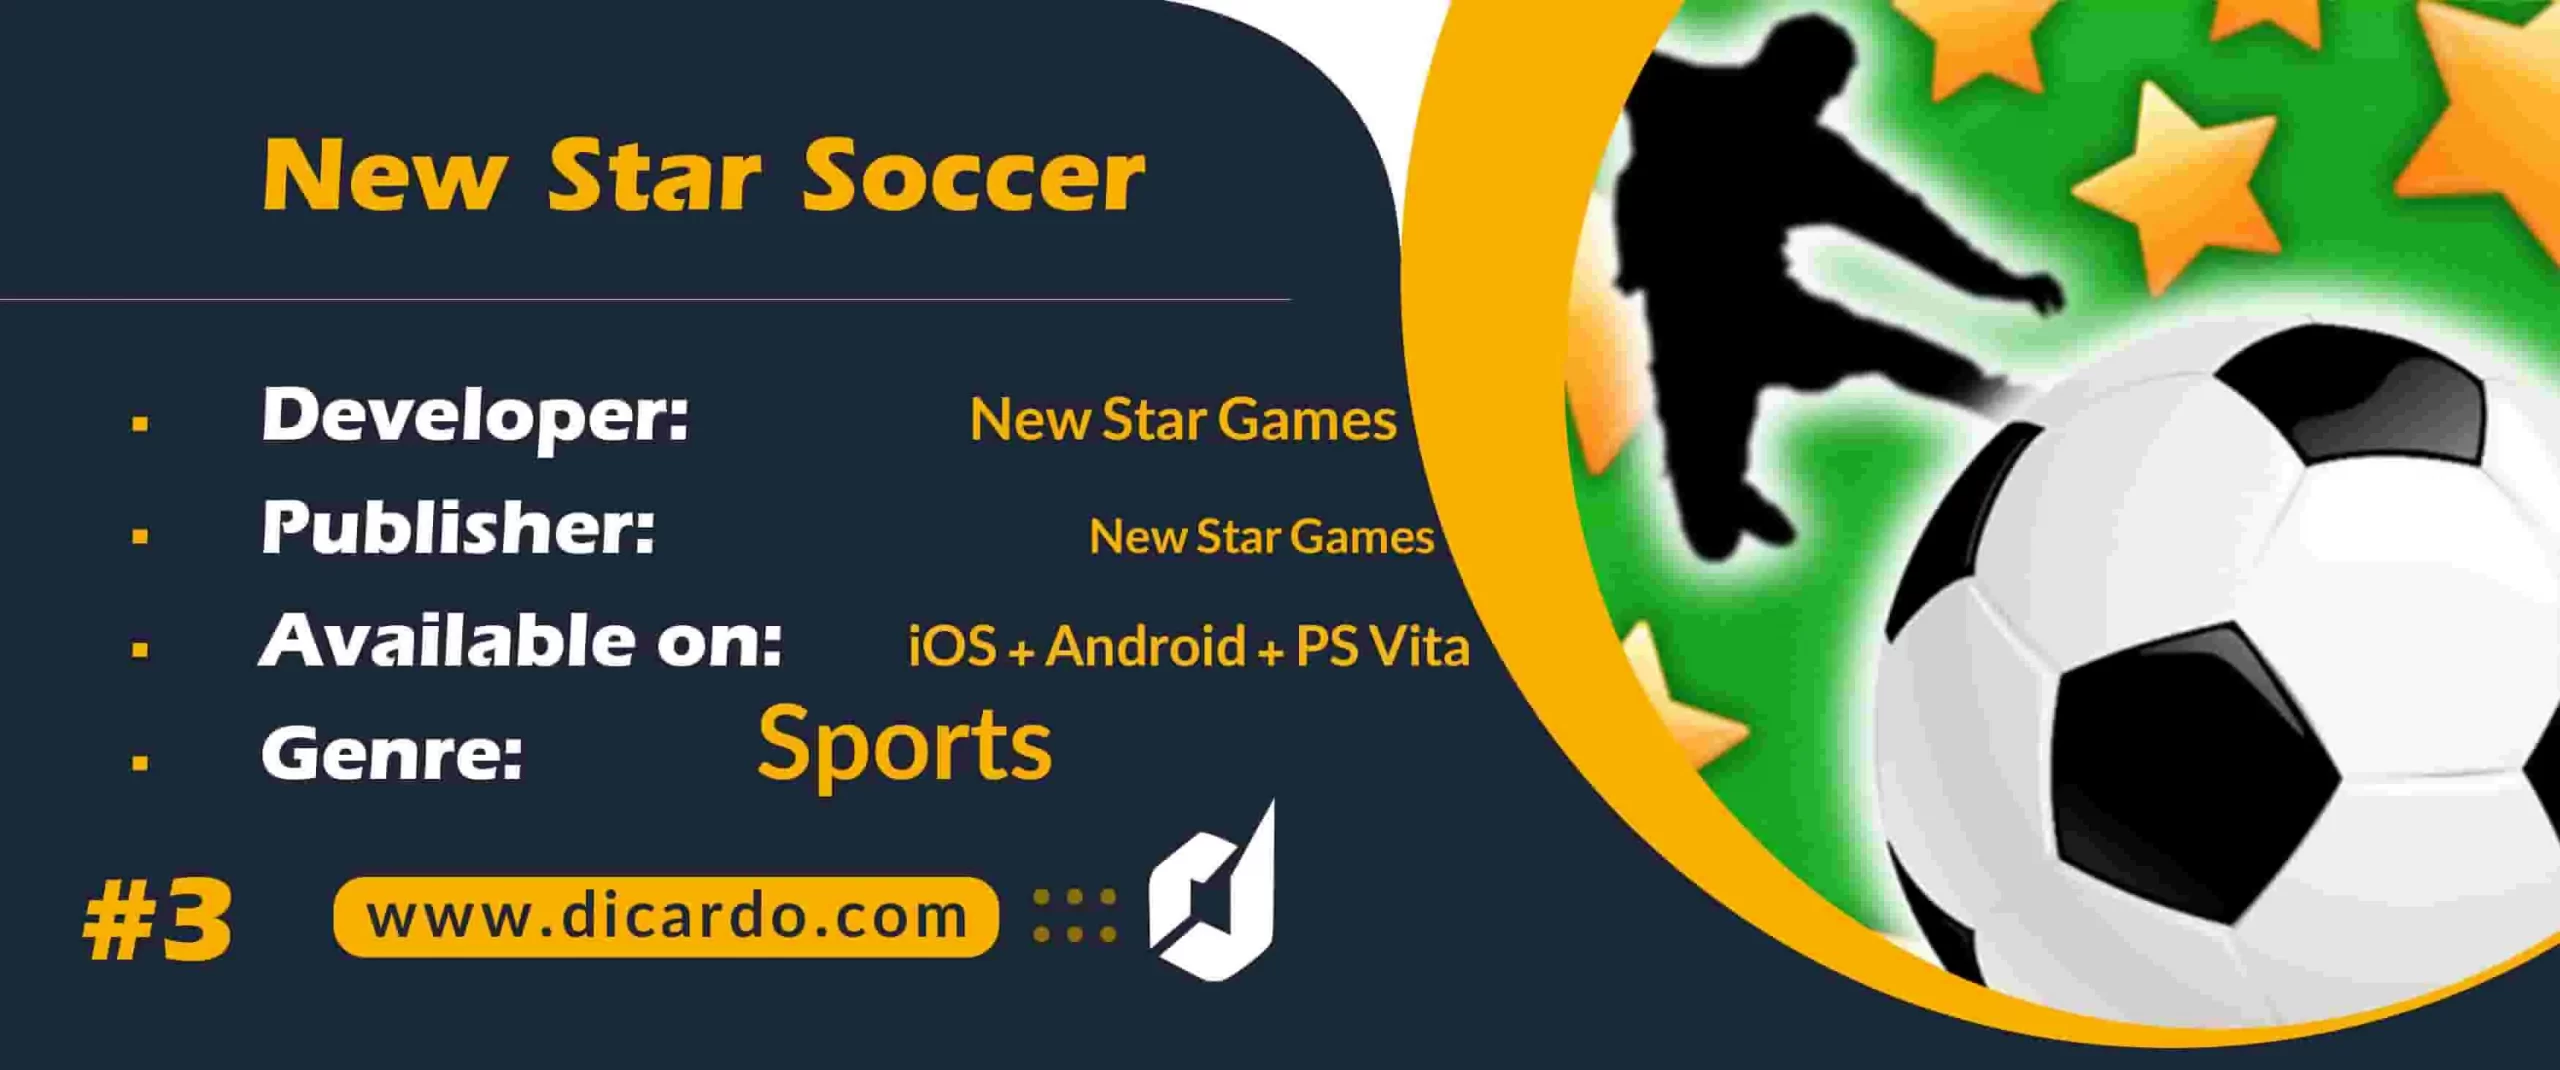 #3 نیو استار ساکر New Star Soccer از برترین بازیهای فوتبال برای گوشی و تبلت های آندرویدی